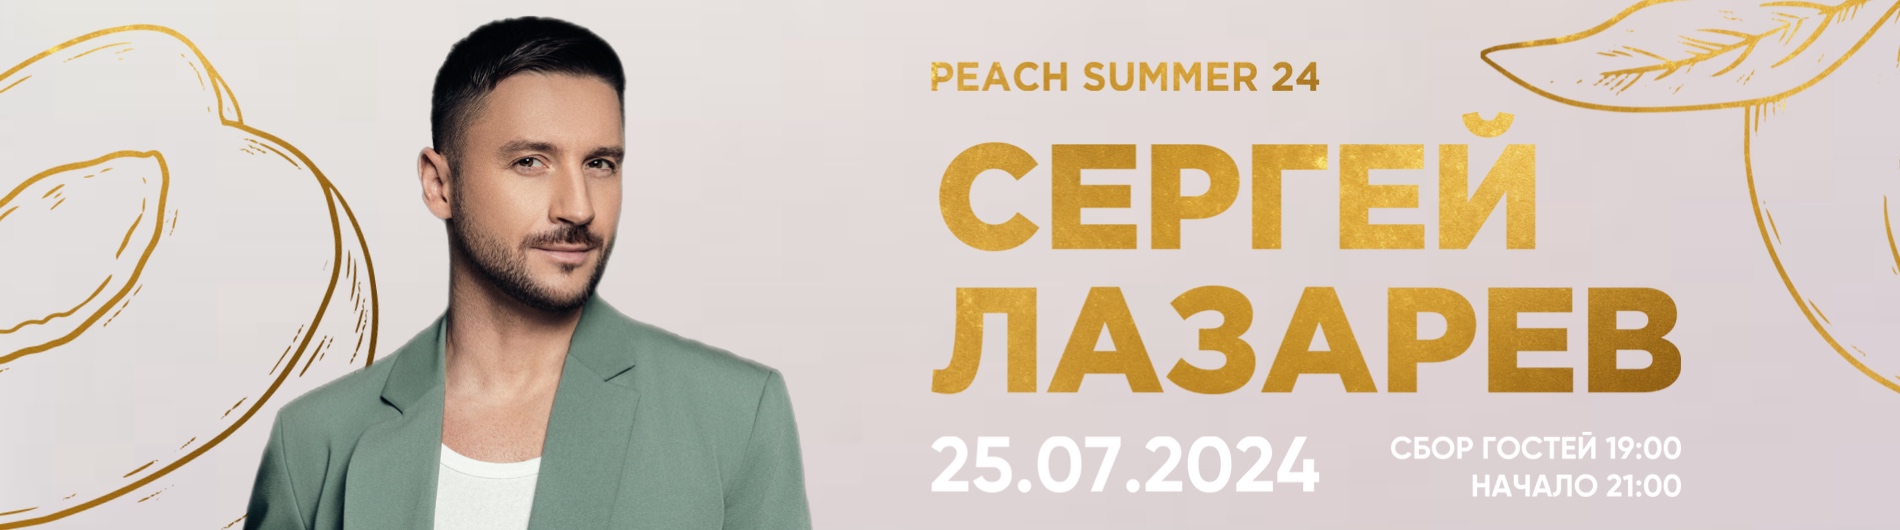 Сергей Лазарев на летней террасе ресторана Peach